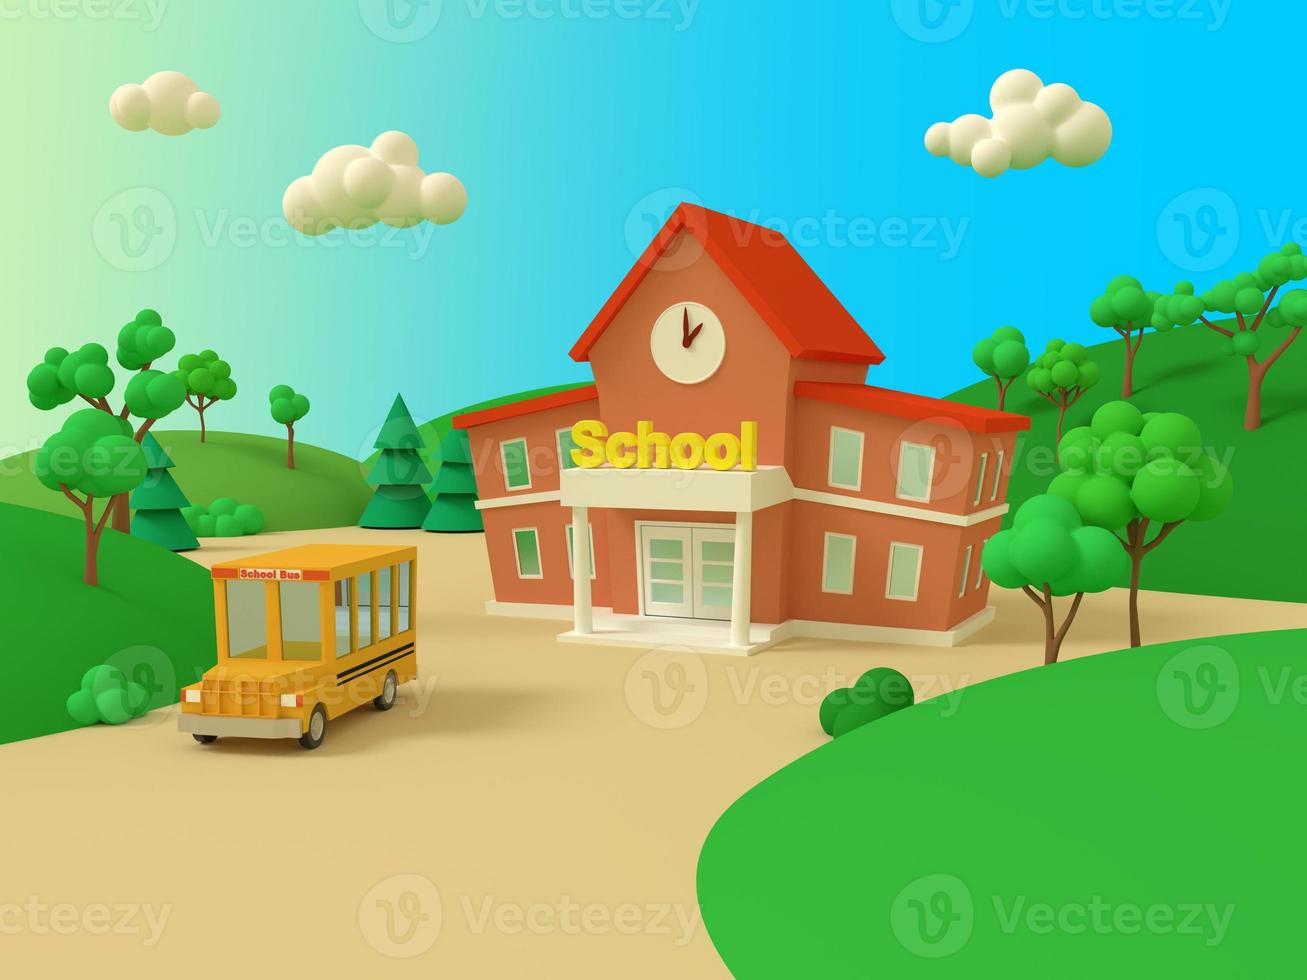 schoolgebouw en gele bus met groen zomers prachtig landschap. terug naar school. volumetrische stijl illustratie. 3D render. foto